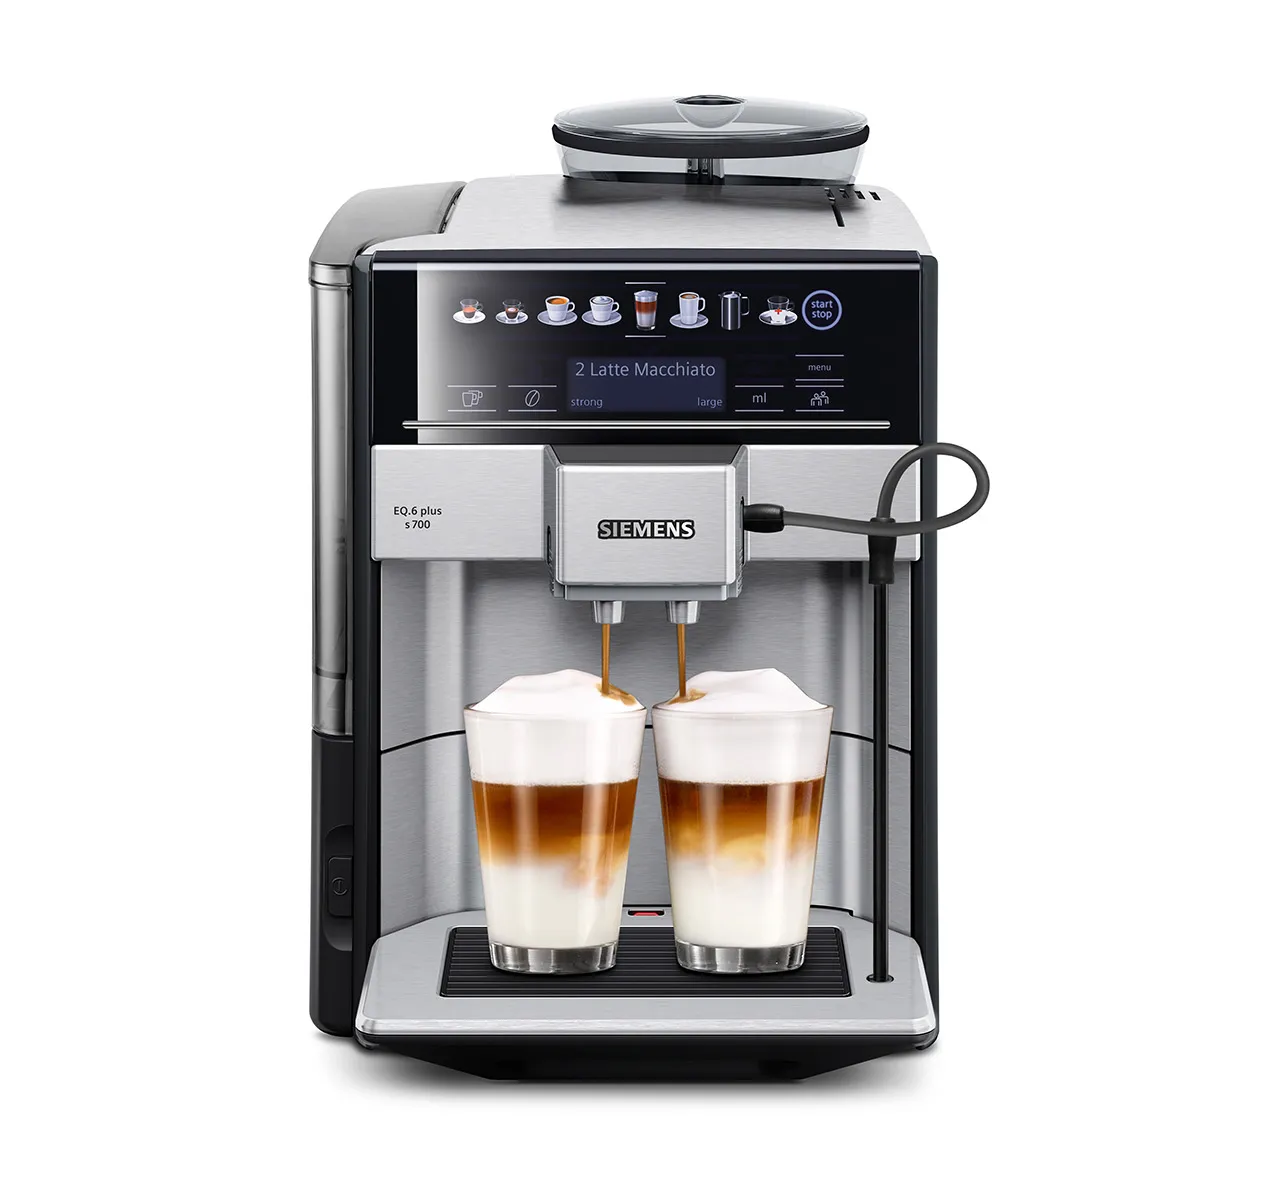 Inbouw espresso volautomaat EQ6 plus s700 Edelstaal 